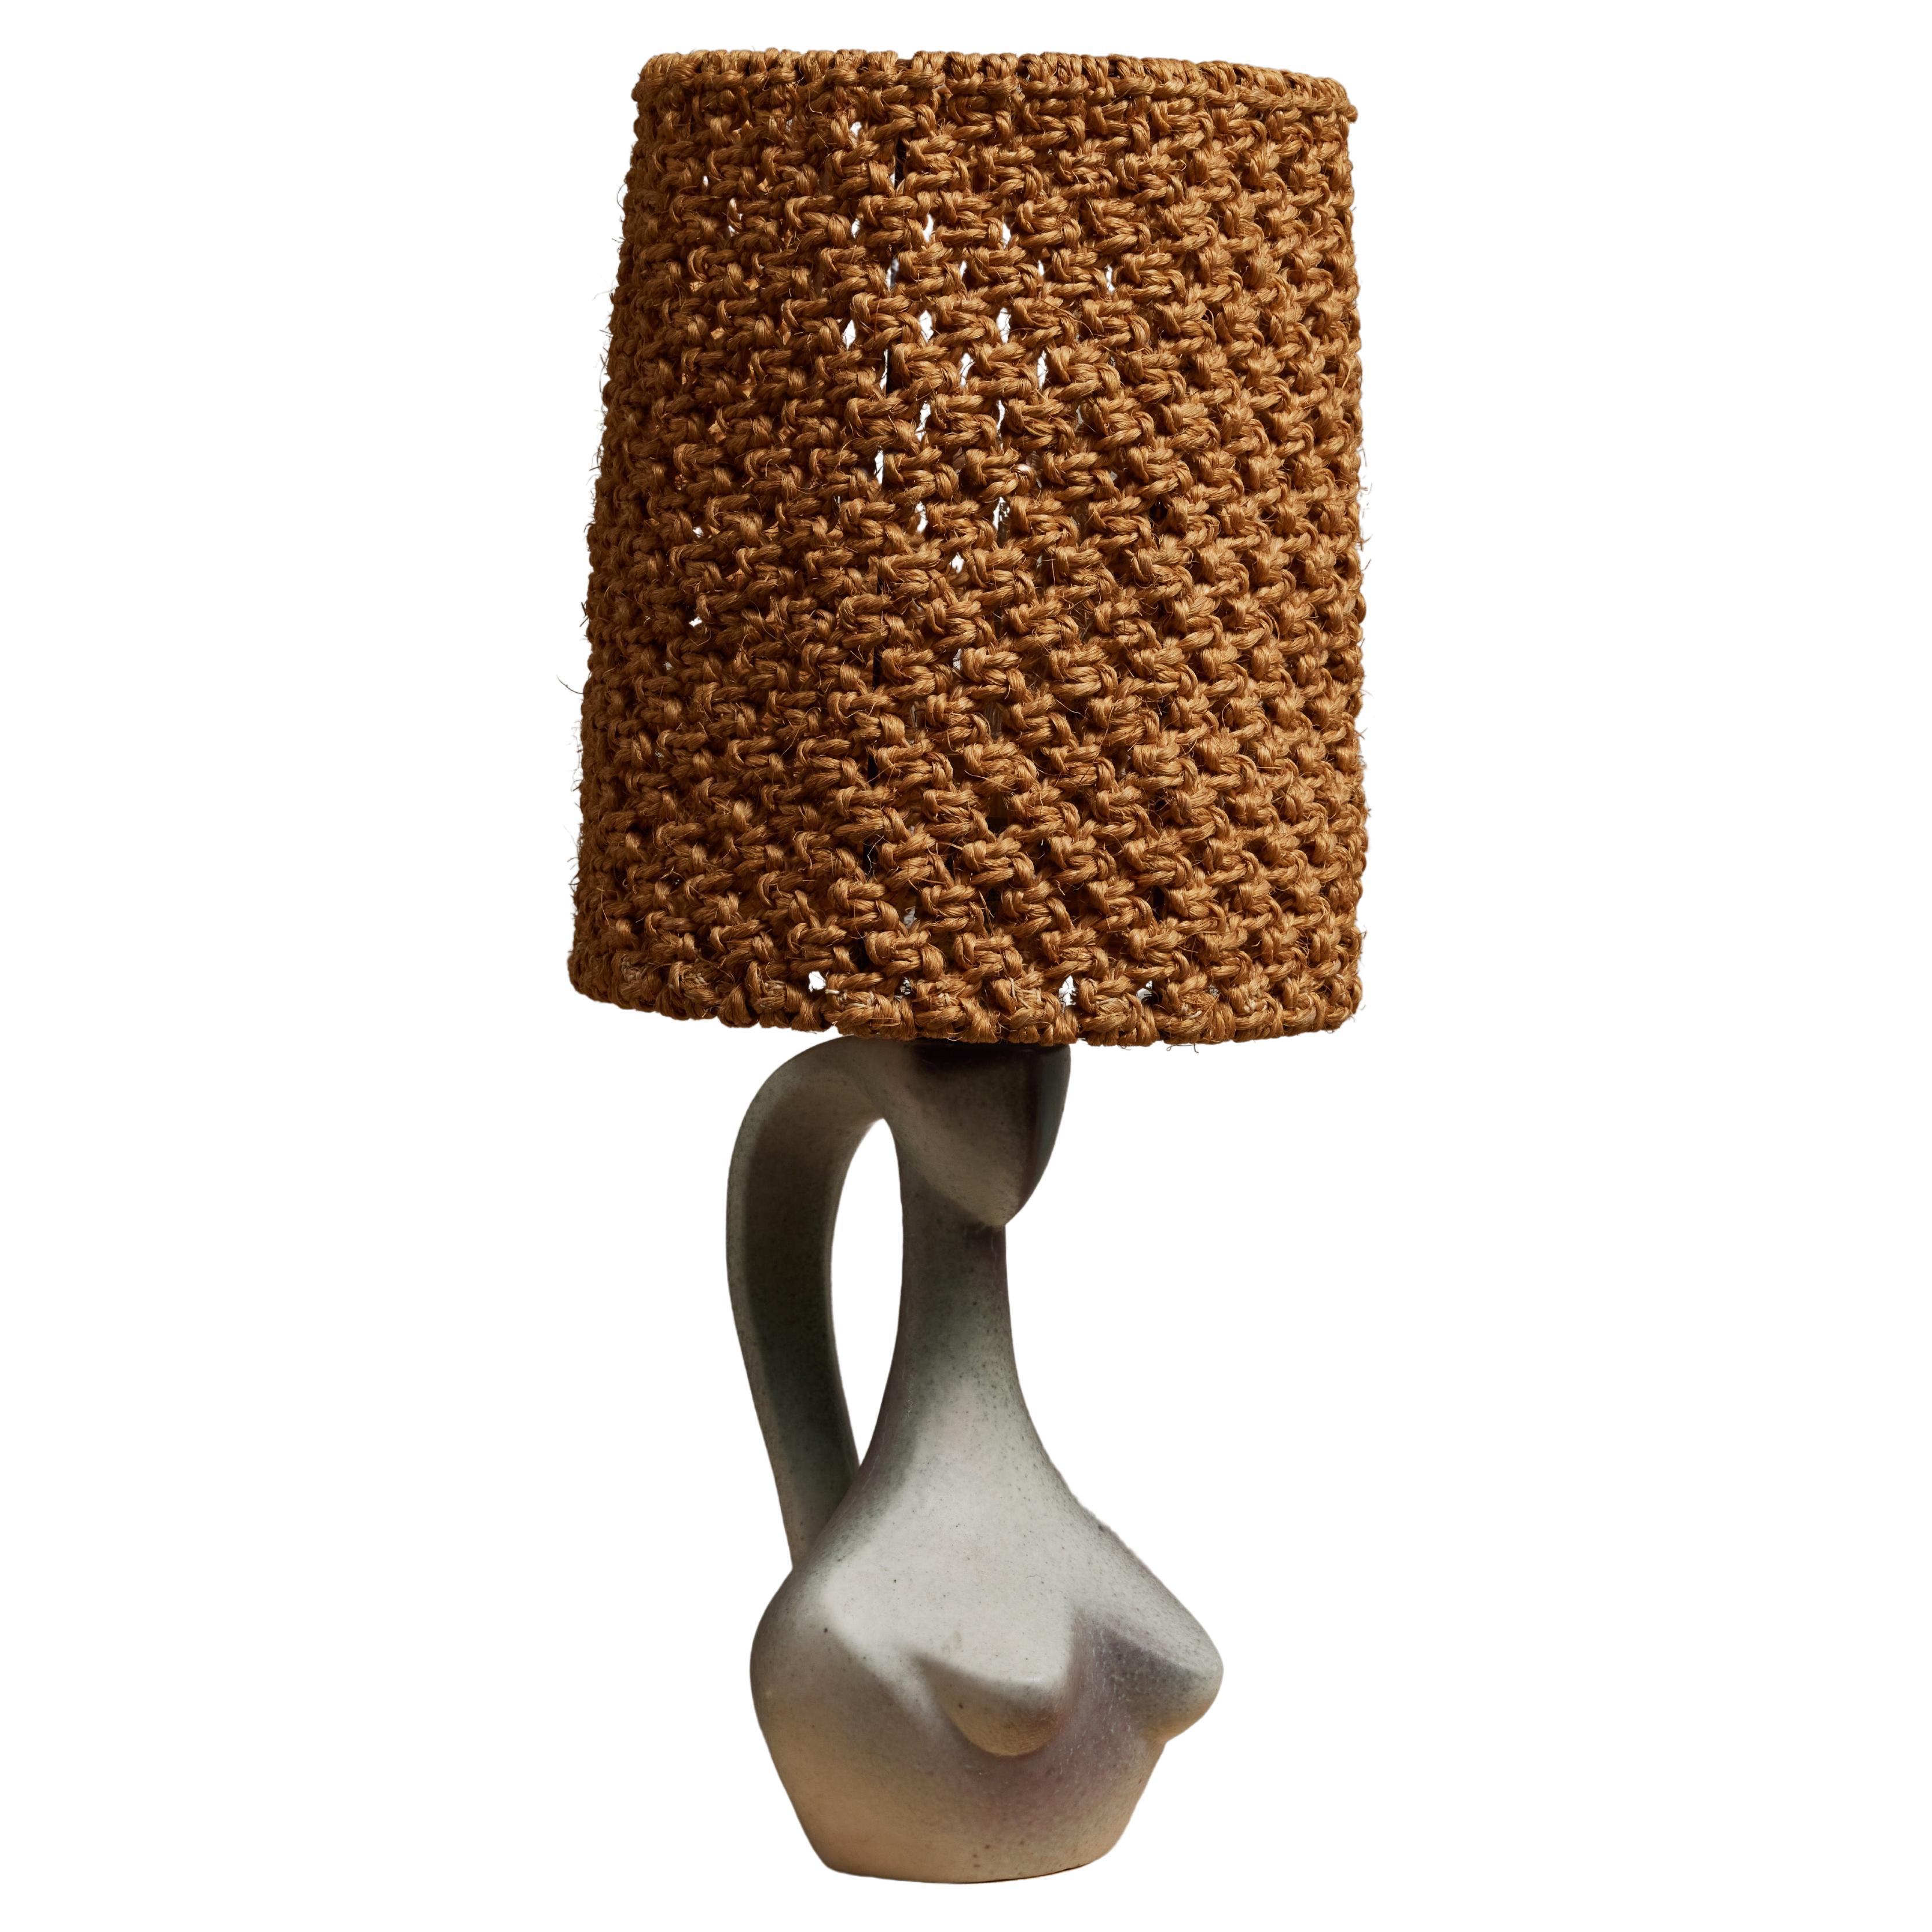 Lampe de table buste féminine Jacques Blin